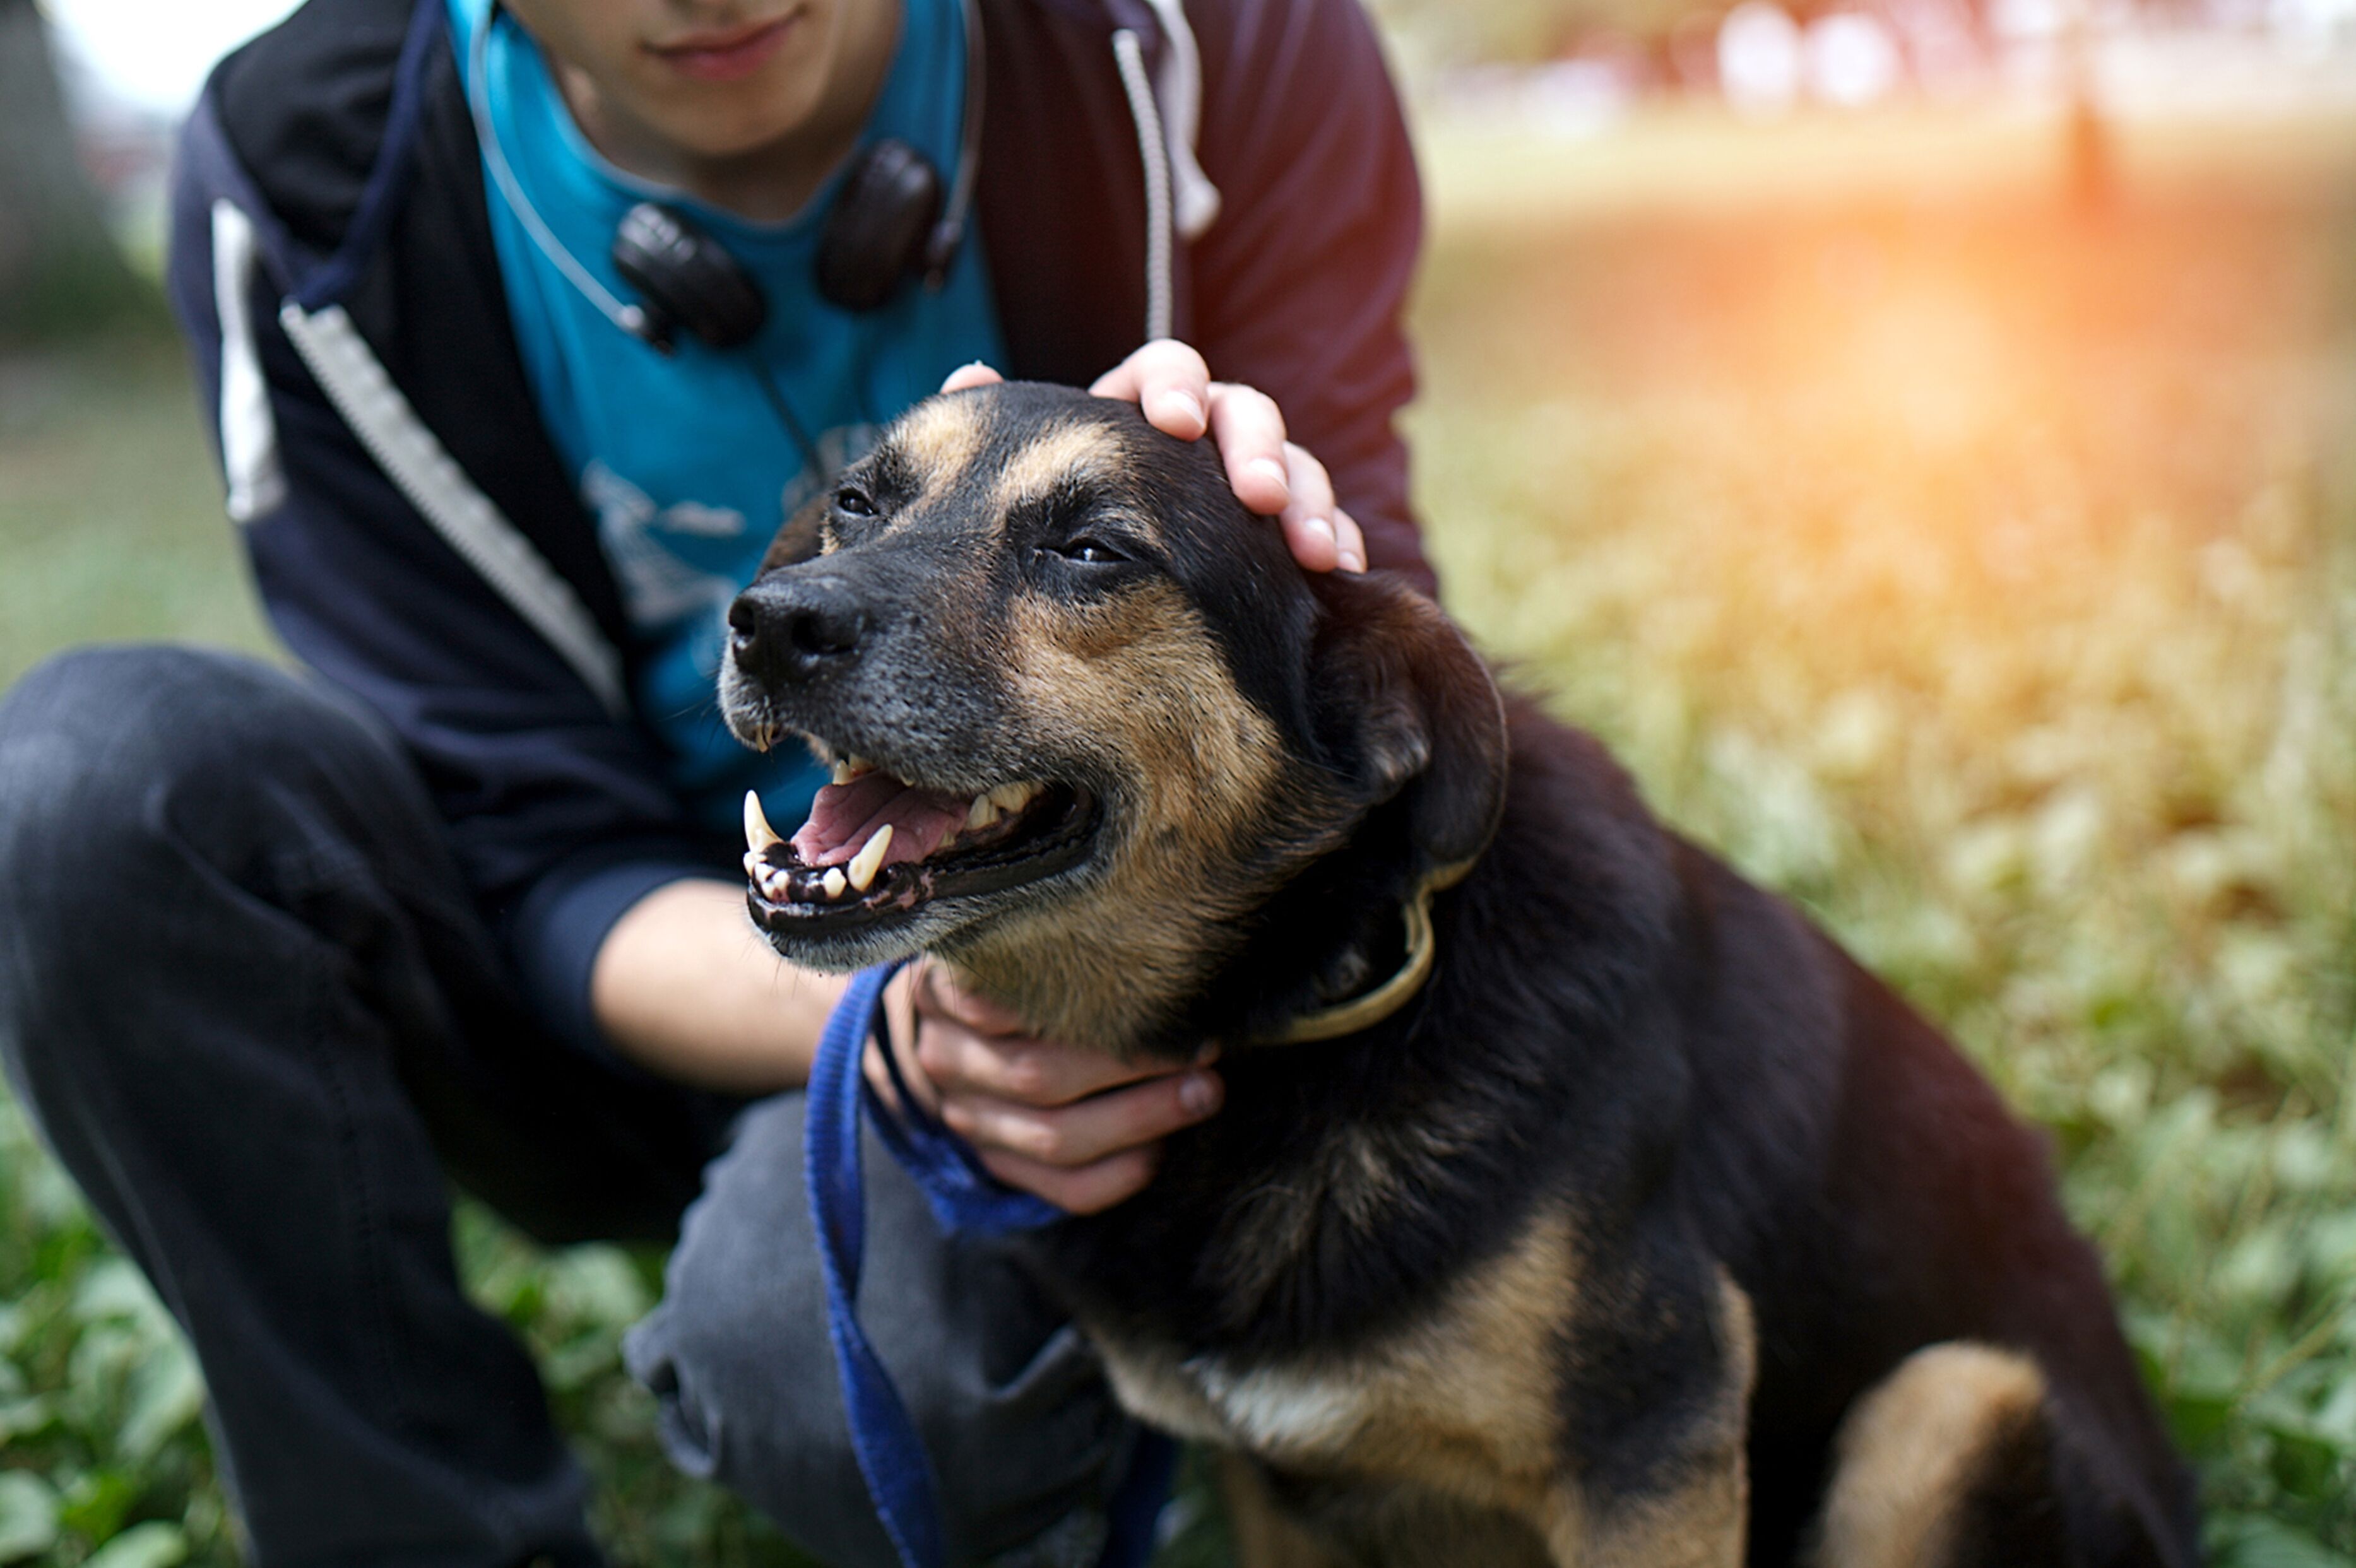 Perro siendo acariciado por humano / Imagen tomada de: Shutterstock